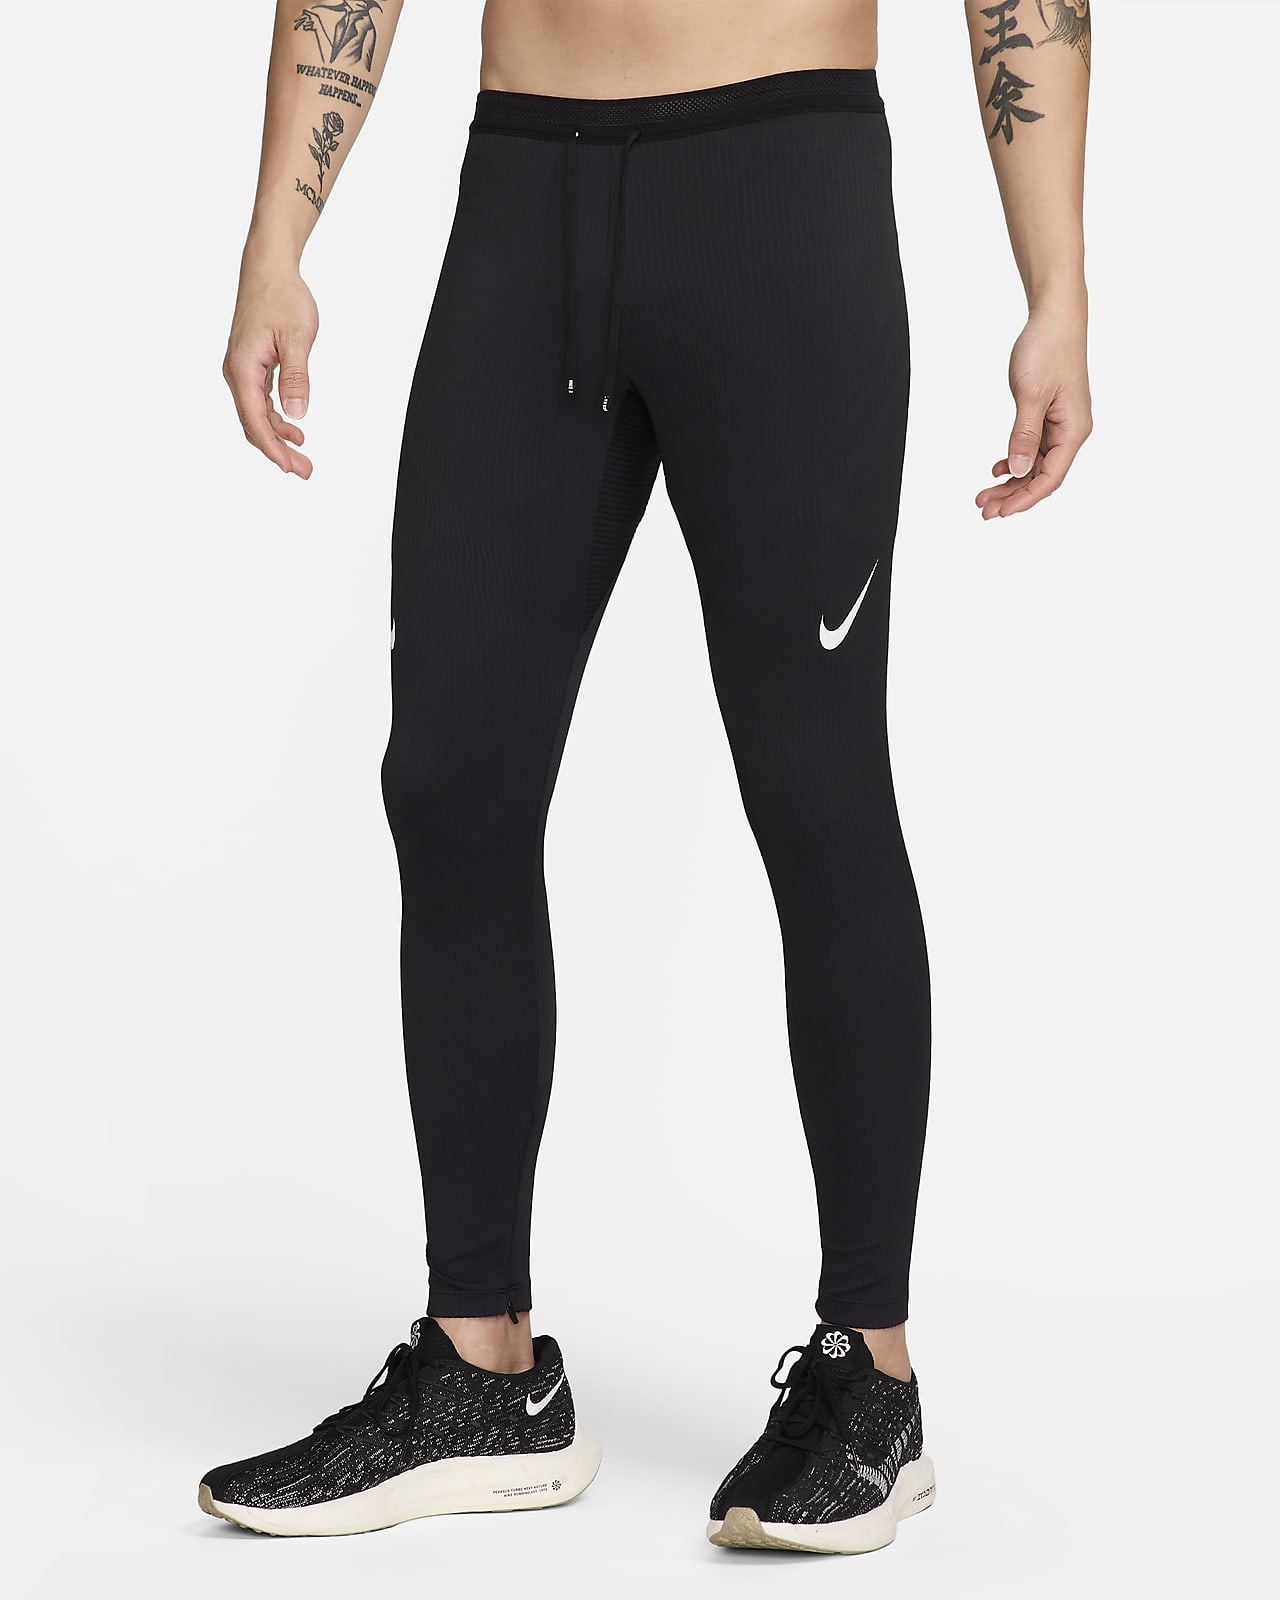 Buy Nike Women Black Solid Tight Fit FAST Dri FIT Running Tights